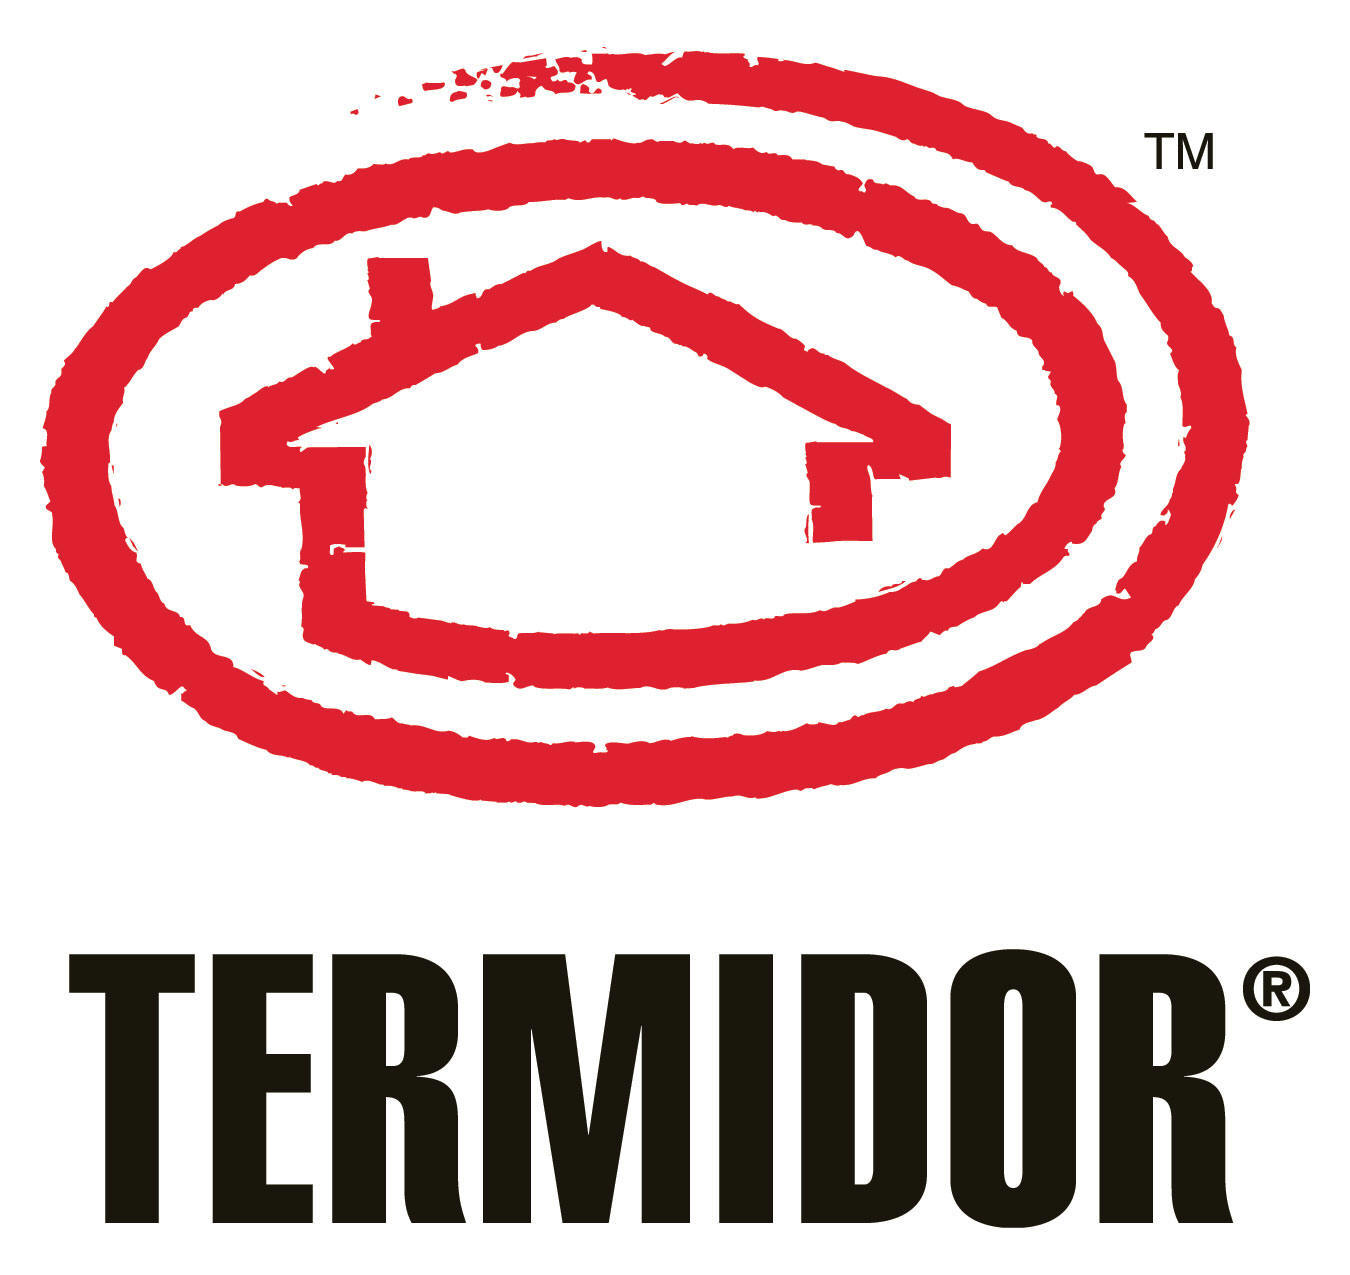 Termite Control, Termidor / Topspestcontrol.com